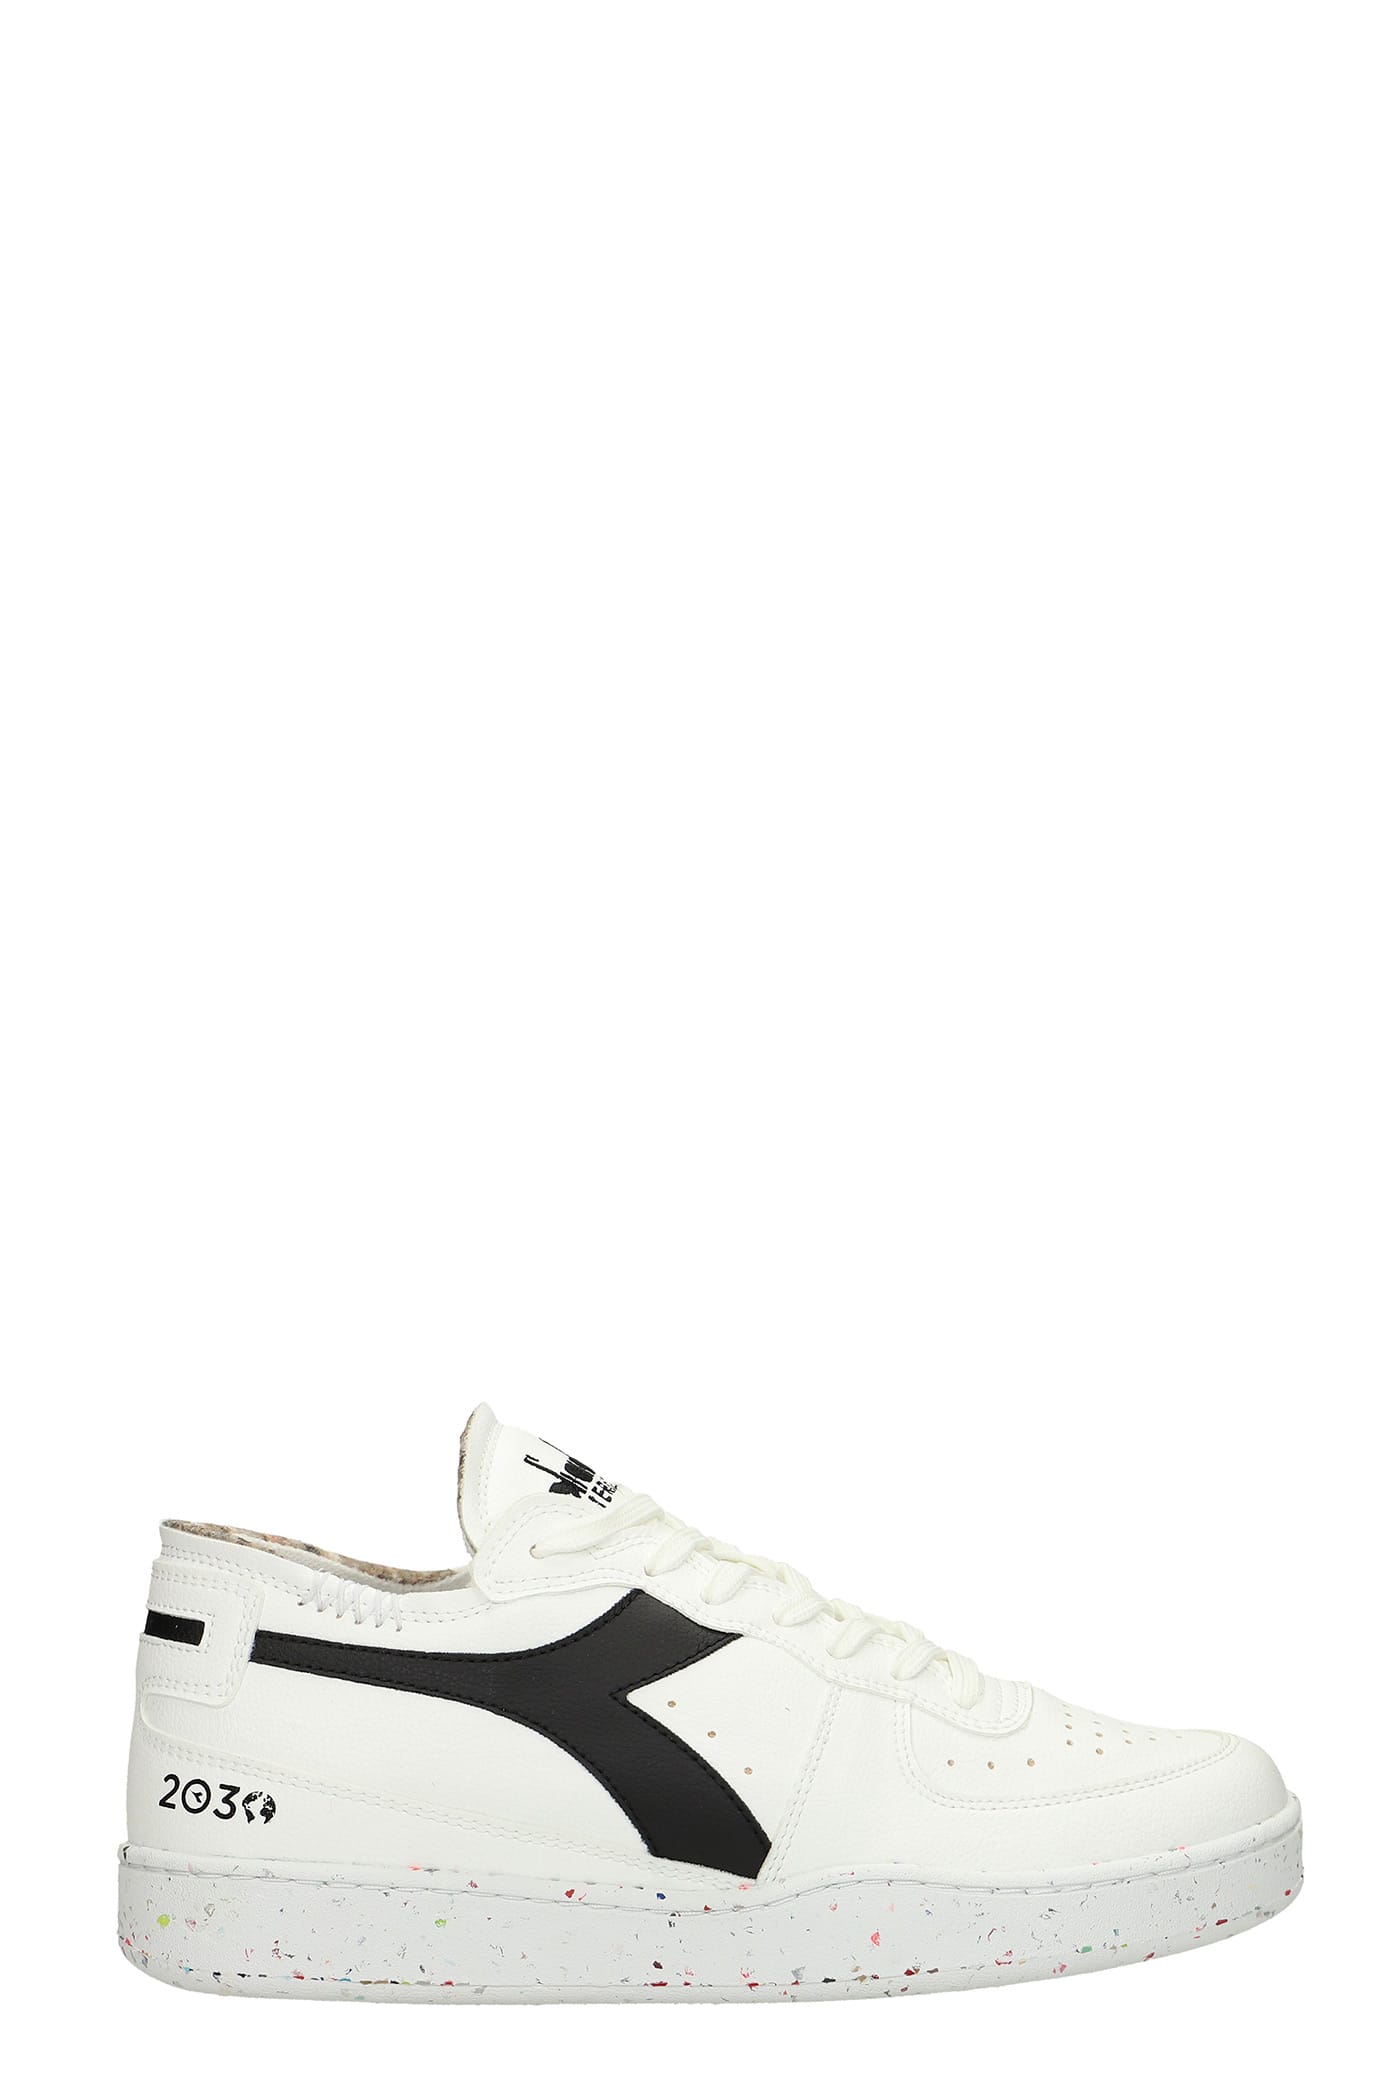 Diadora Mi Basket 2030 Sneakers In White Leather